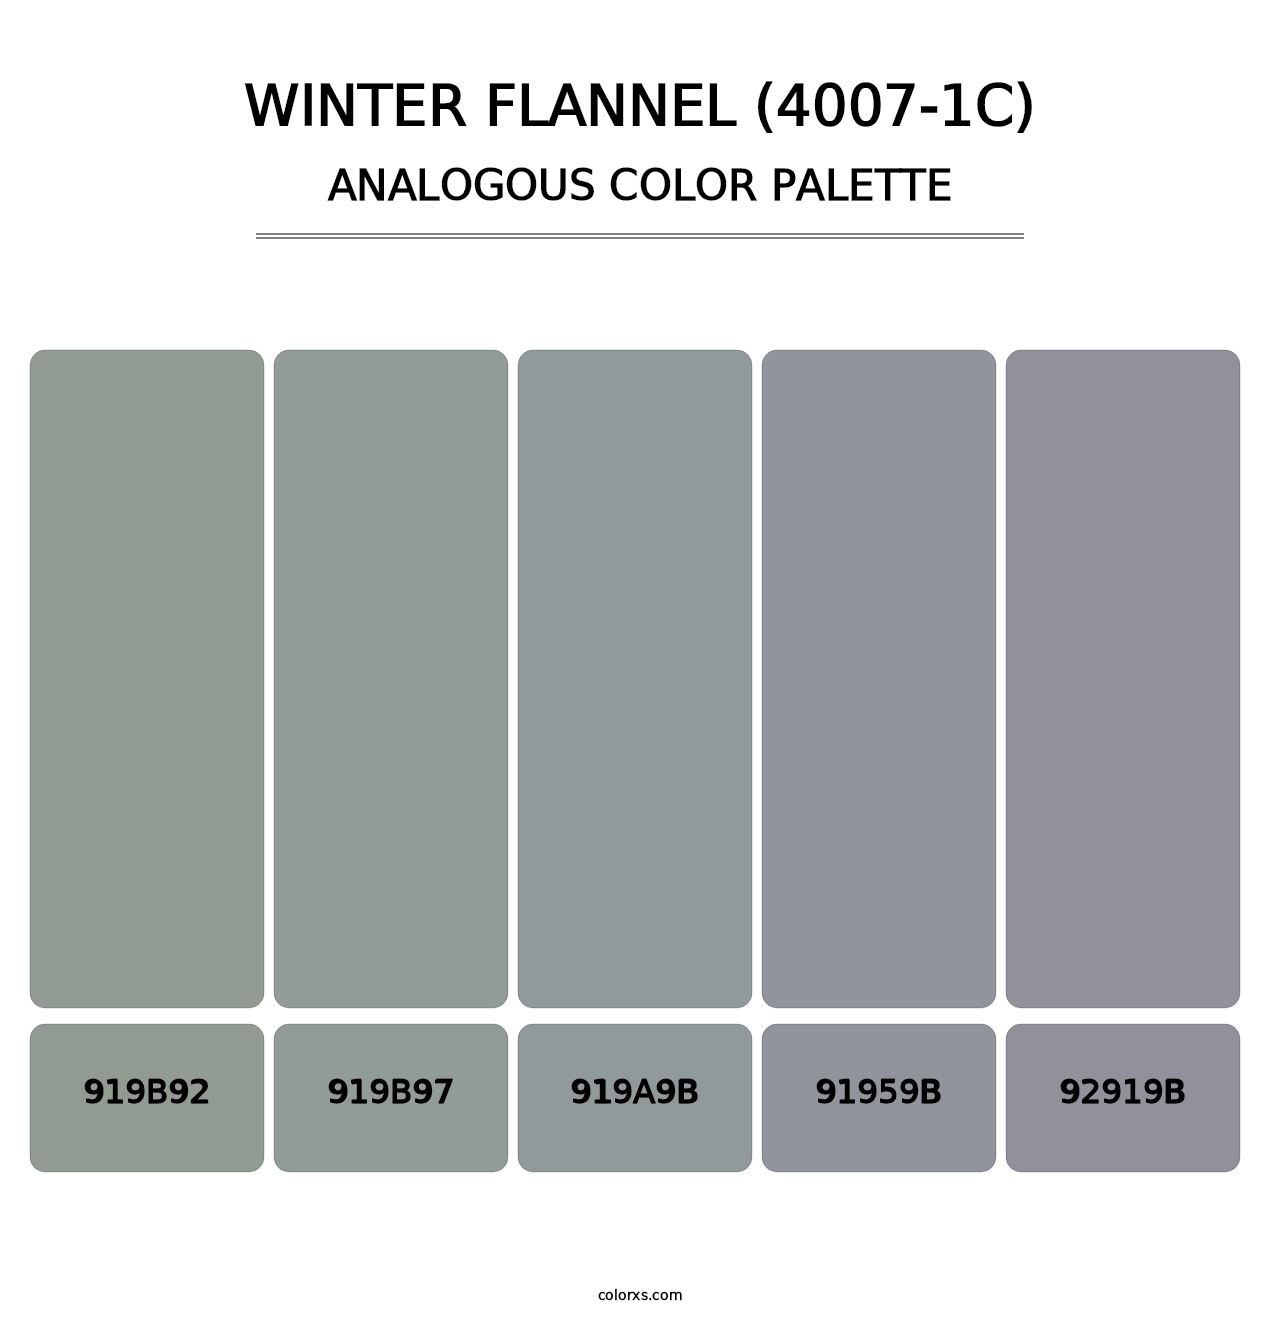 Winter Flannel (4007-1C) - Analogous Color Palette